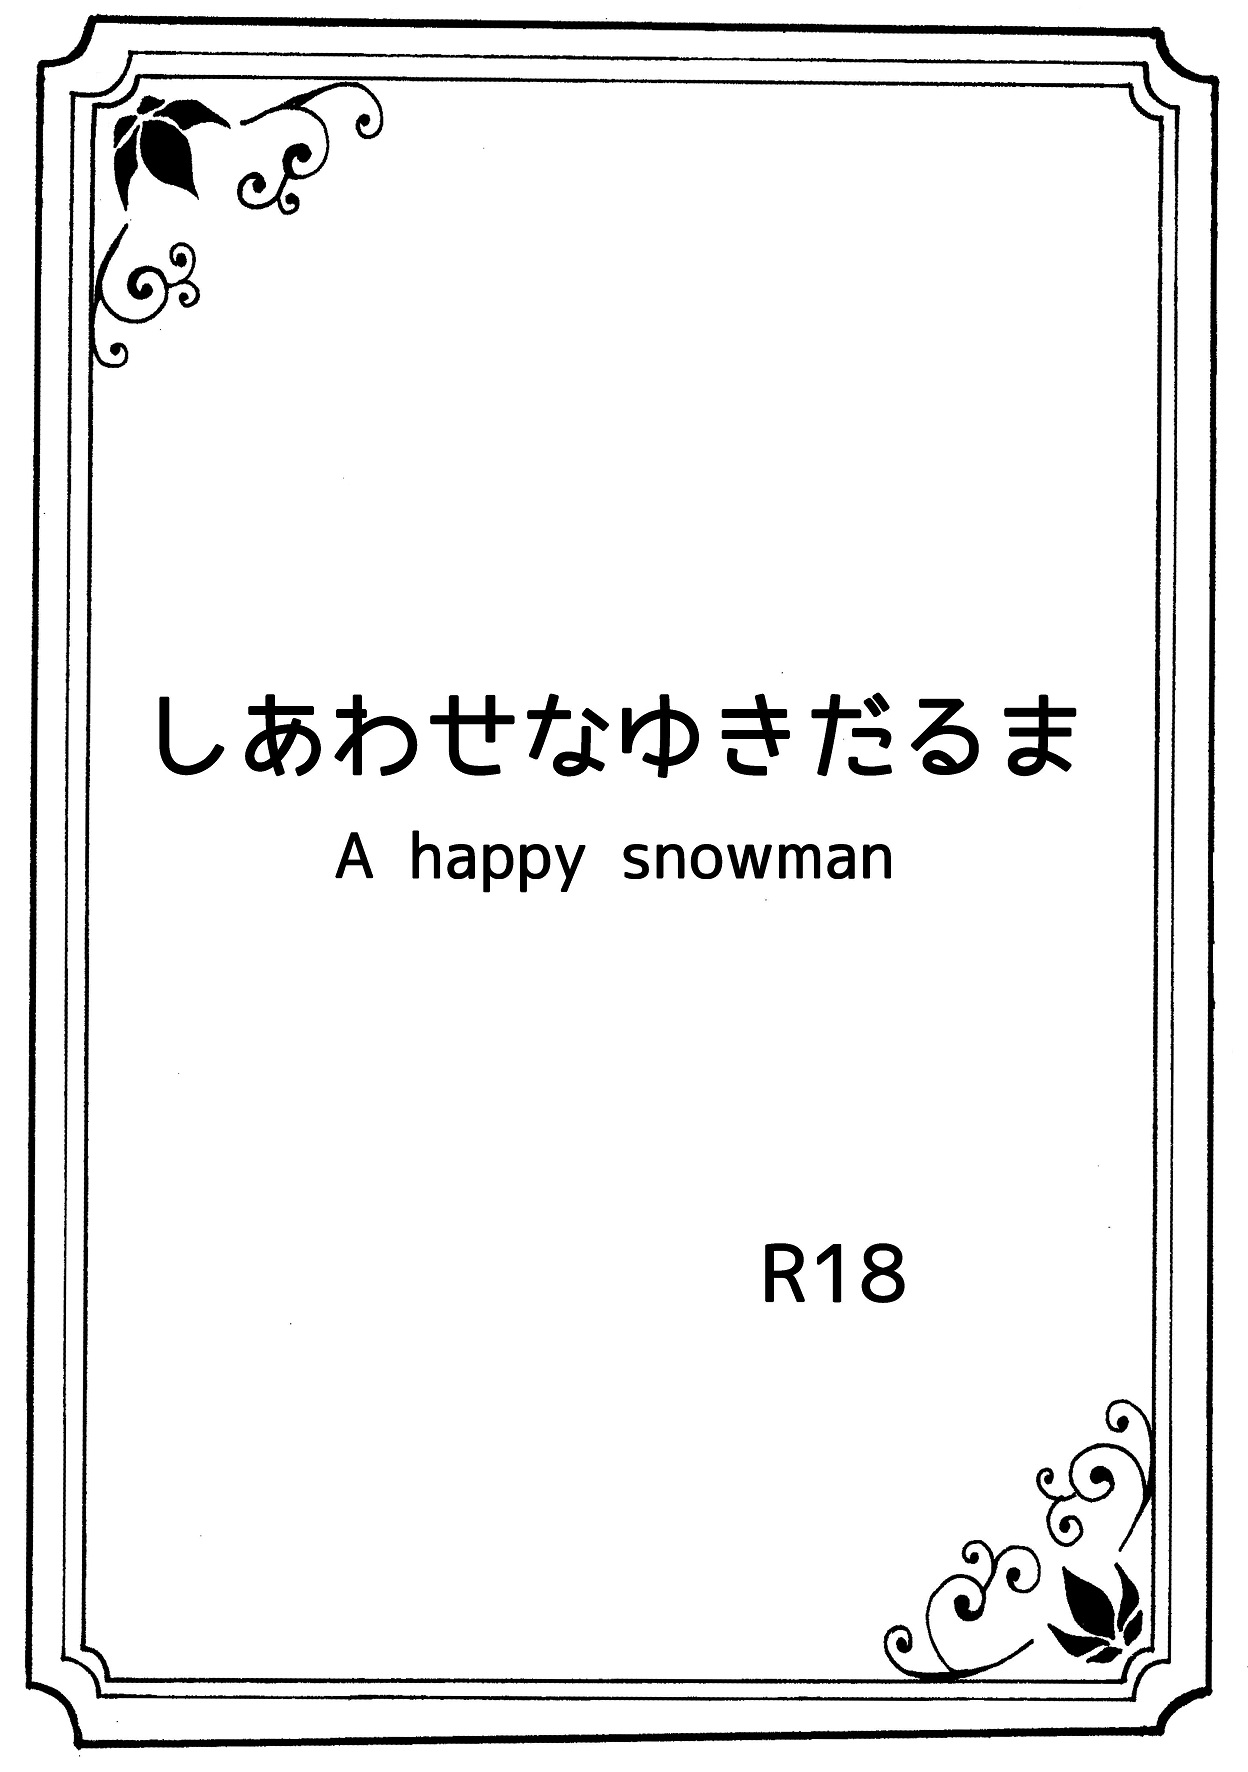 [Nanchuu Erosada] Shiawase na Yukidaruma - A happy snowman (Frozen) [南中尋定] しあわせなゆきだるま A happy snowman (アナと雪の女王)